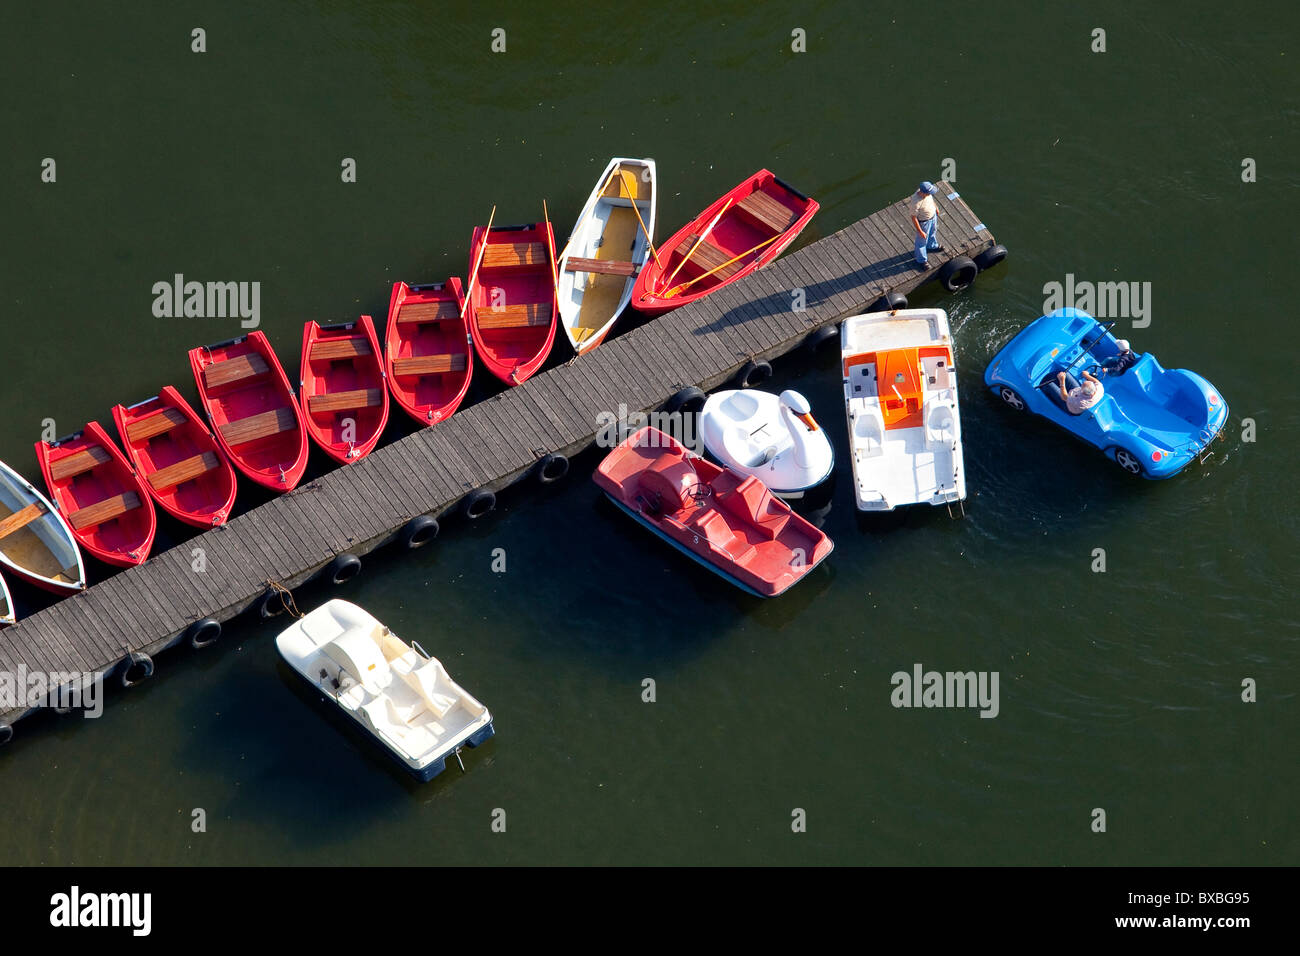 Location de bateau sur le lac dans le parc olympique, vue depuis la Tour olympique de Munich, Bavaria, Germany, Europe Banque D'Images